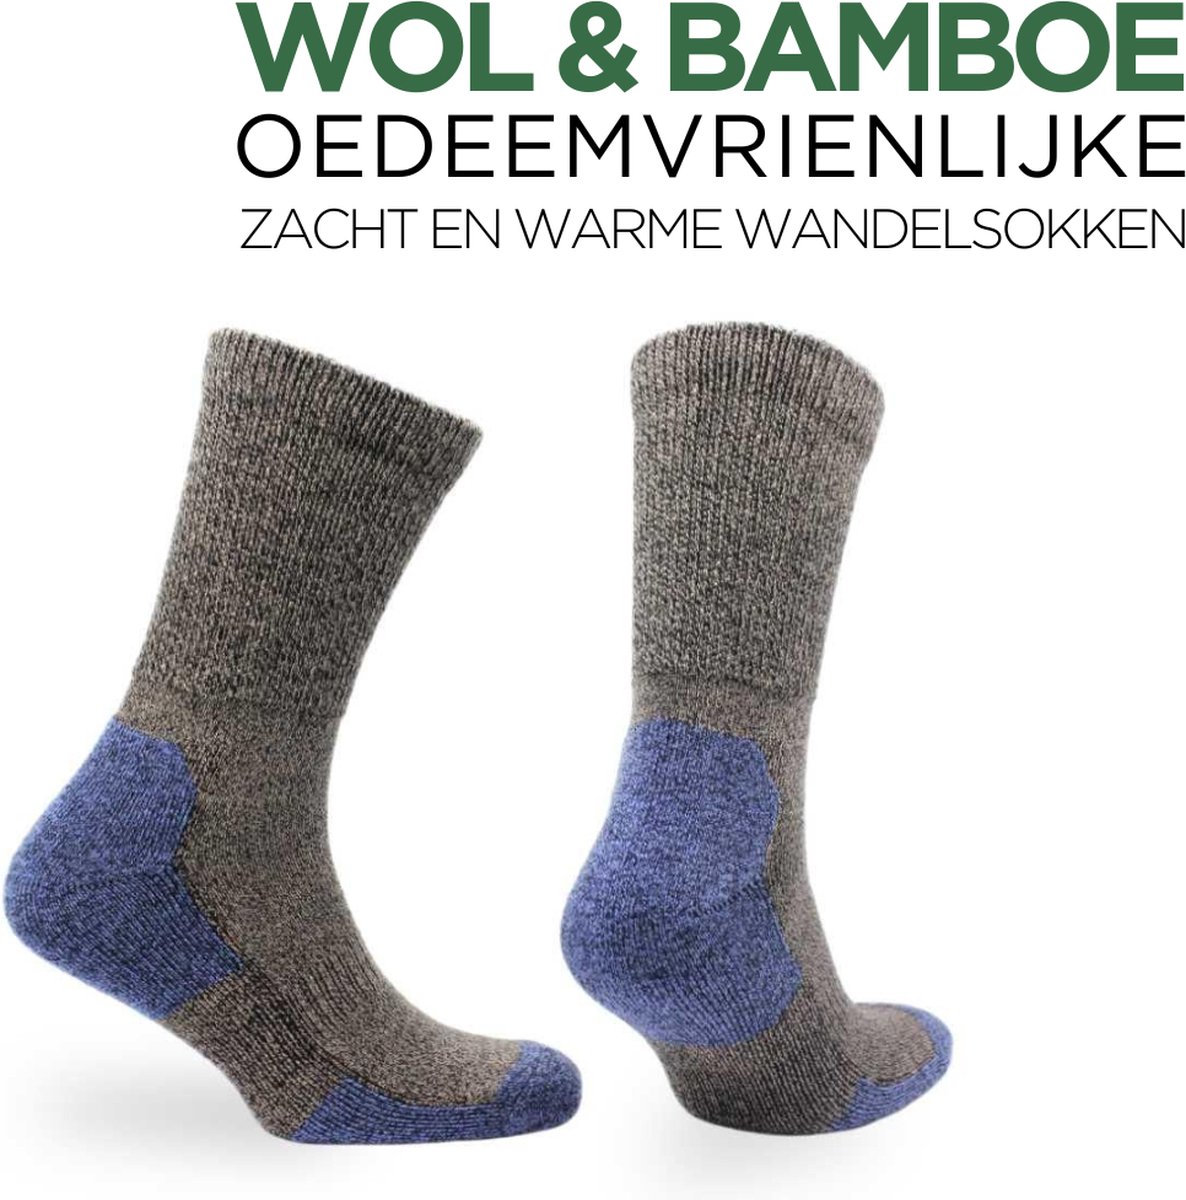 Norfolk - Merino wol en Bamboe mix Wandelsokken - Diabetes en  Oedeemvriendelijke 